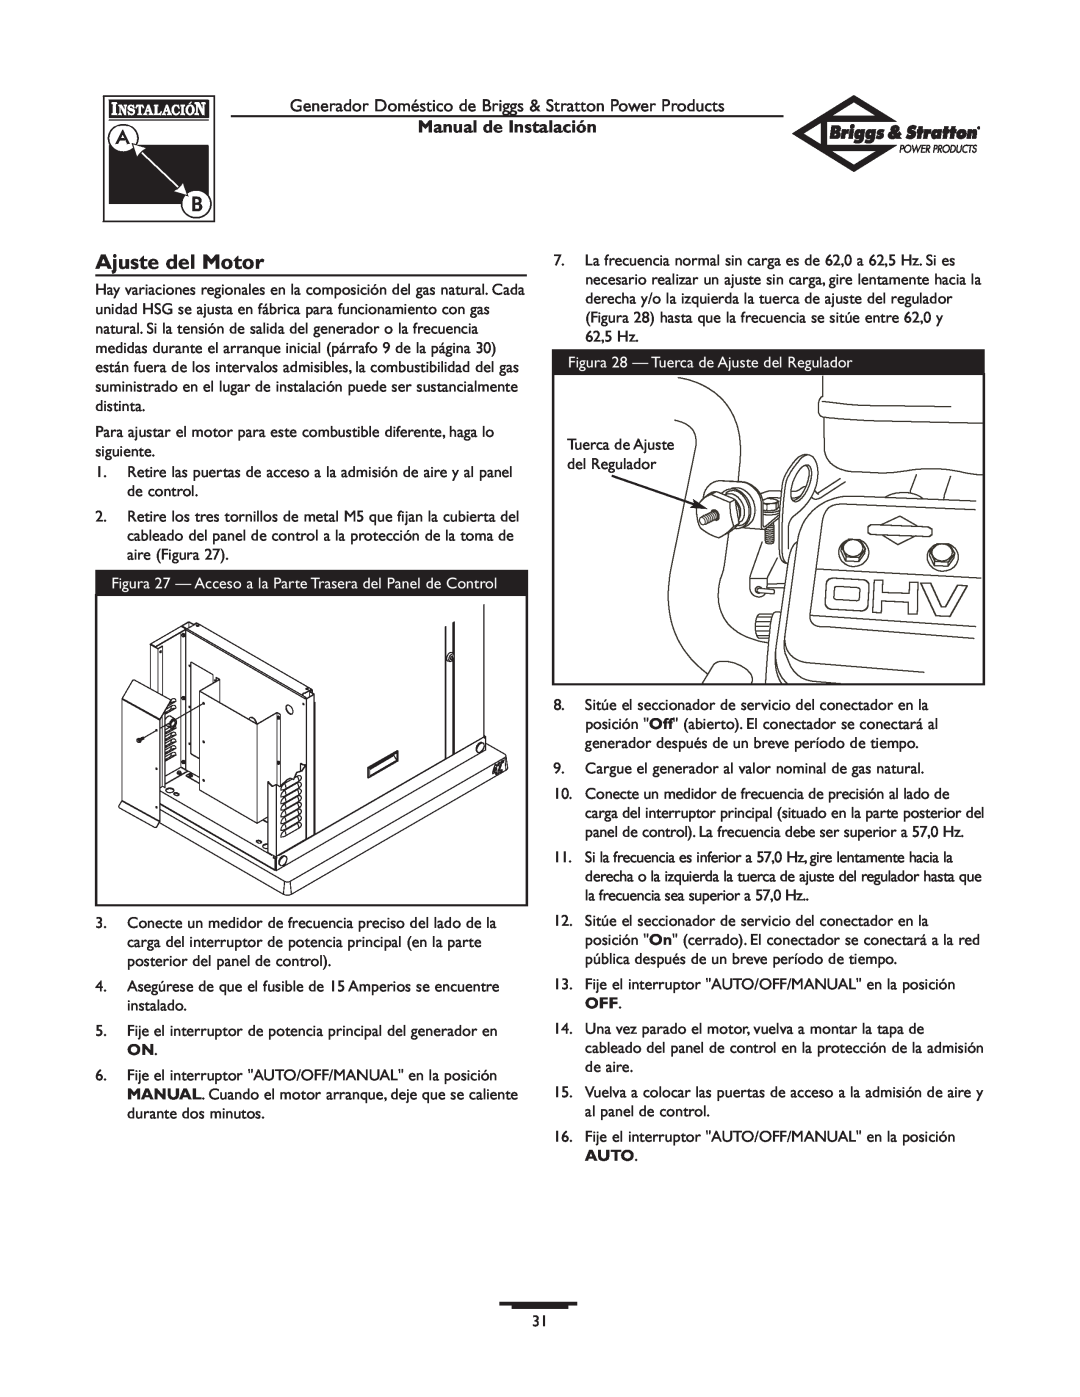 Briggs & Stratton 01938-0 manual Ajuste del Motor, Manual de Instalación 